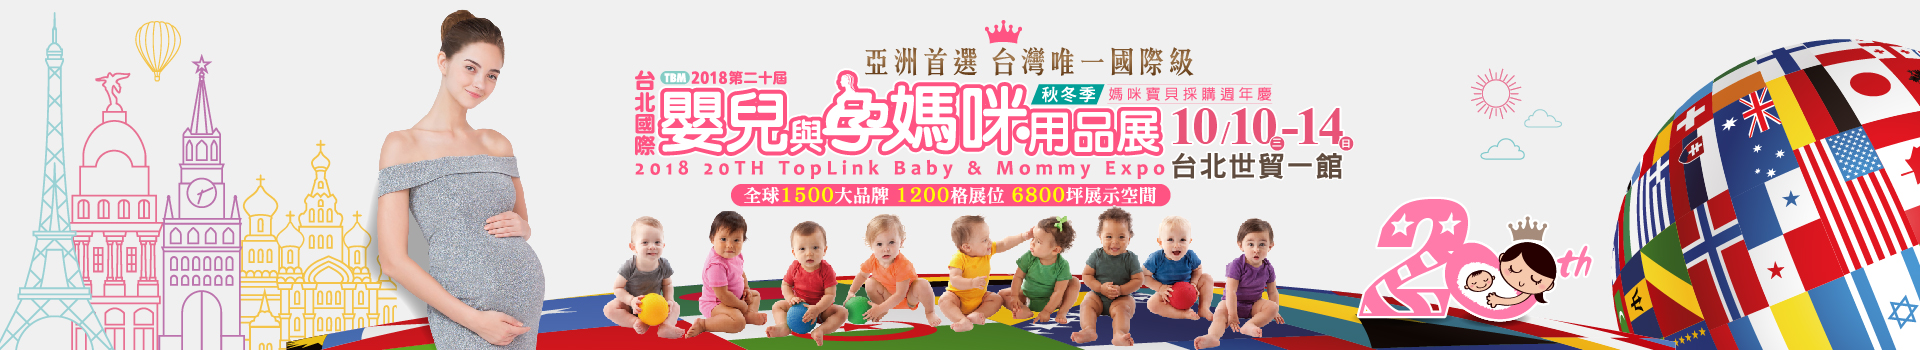 2018台北國際嬰兒與孕媽咪用品展 (秋冬季)